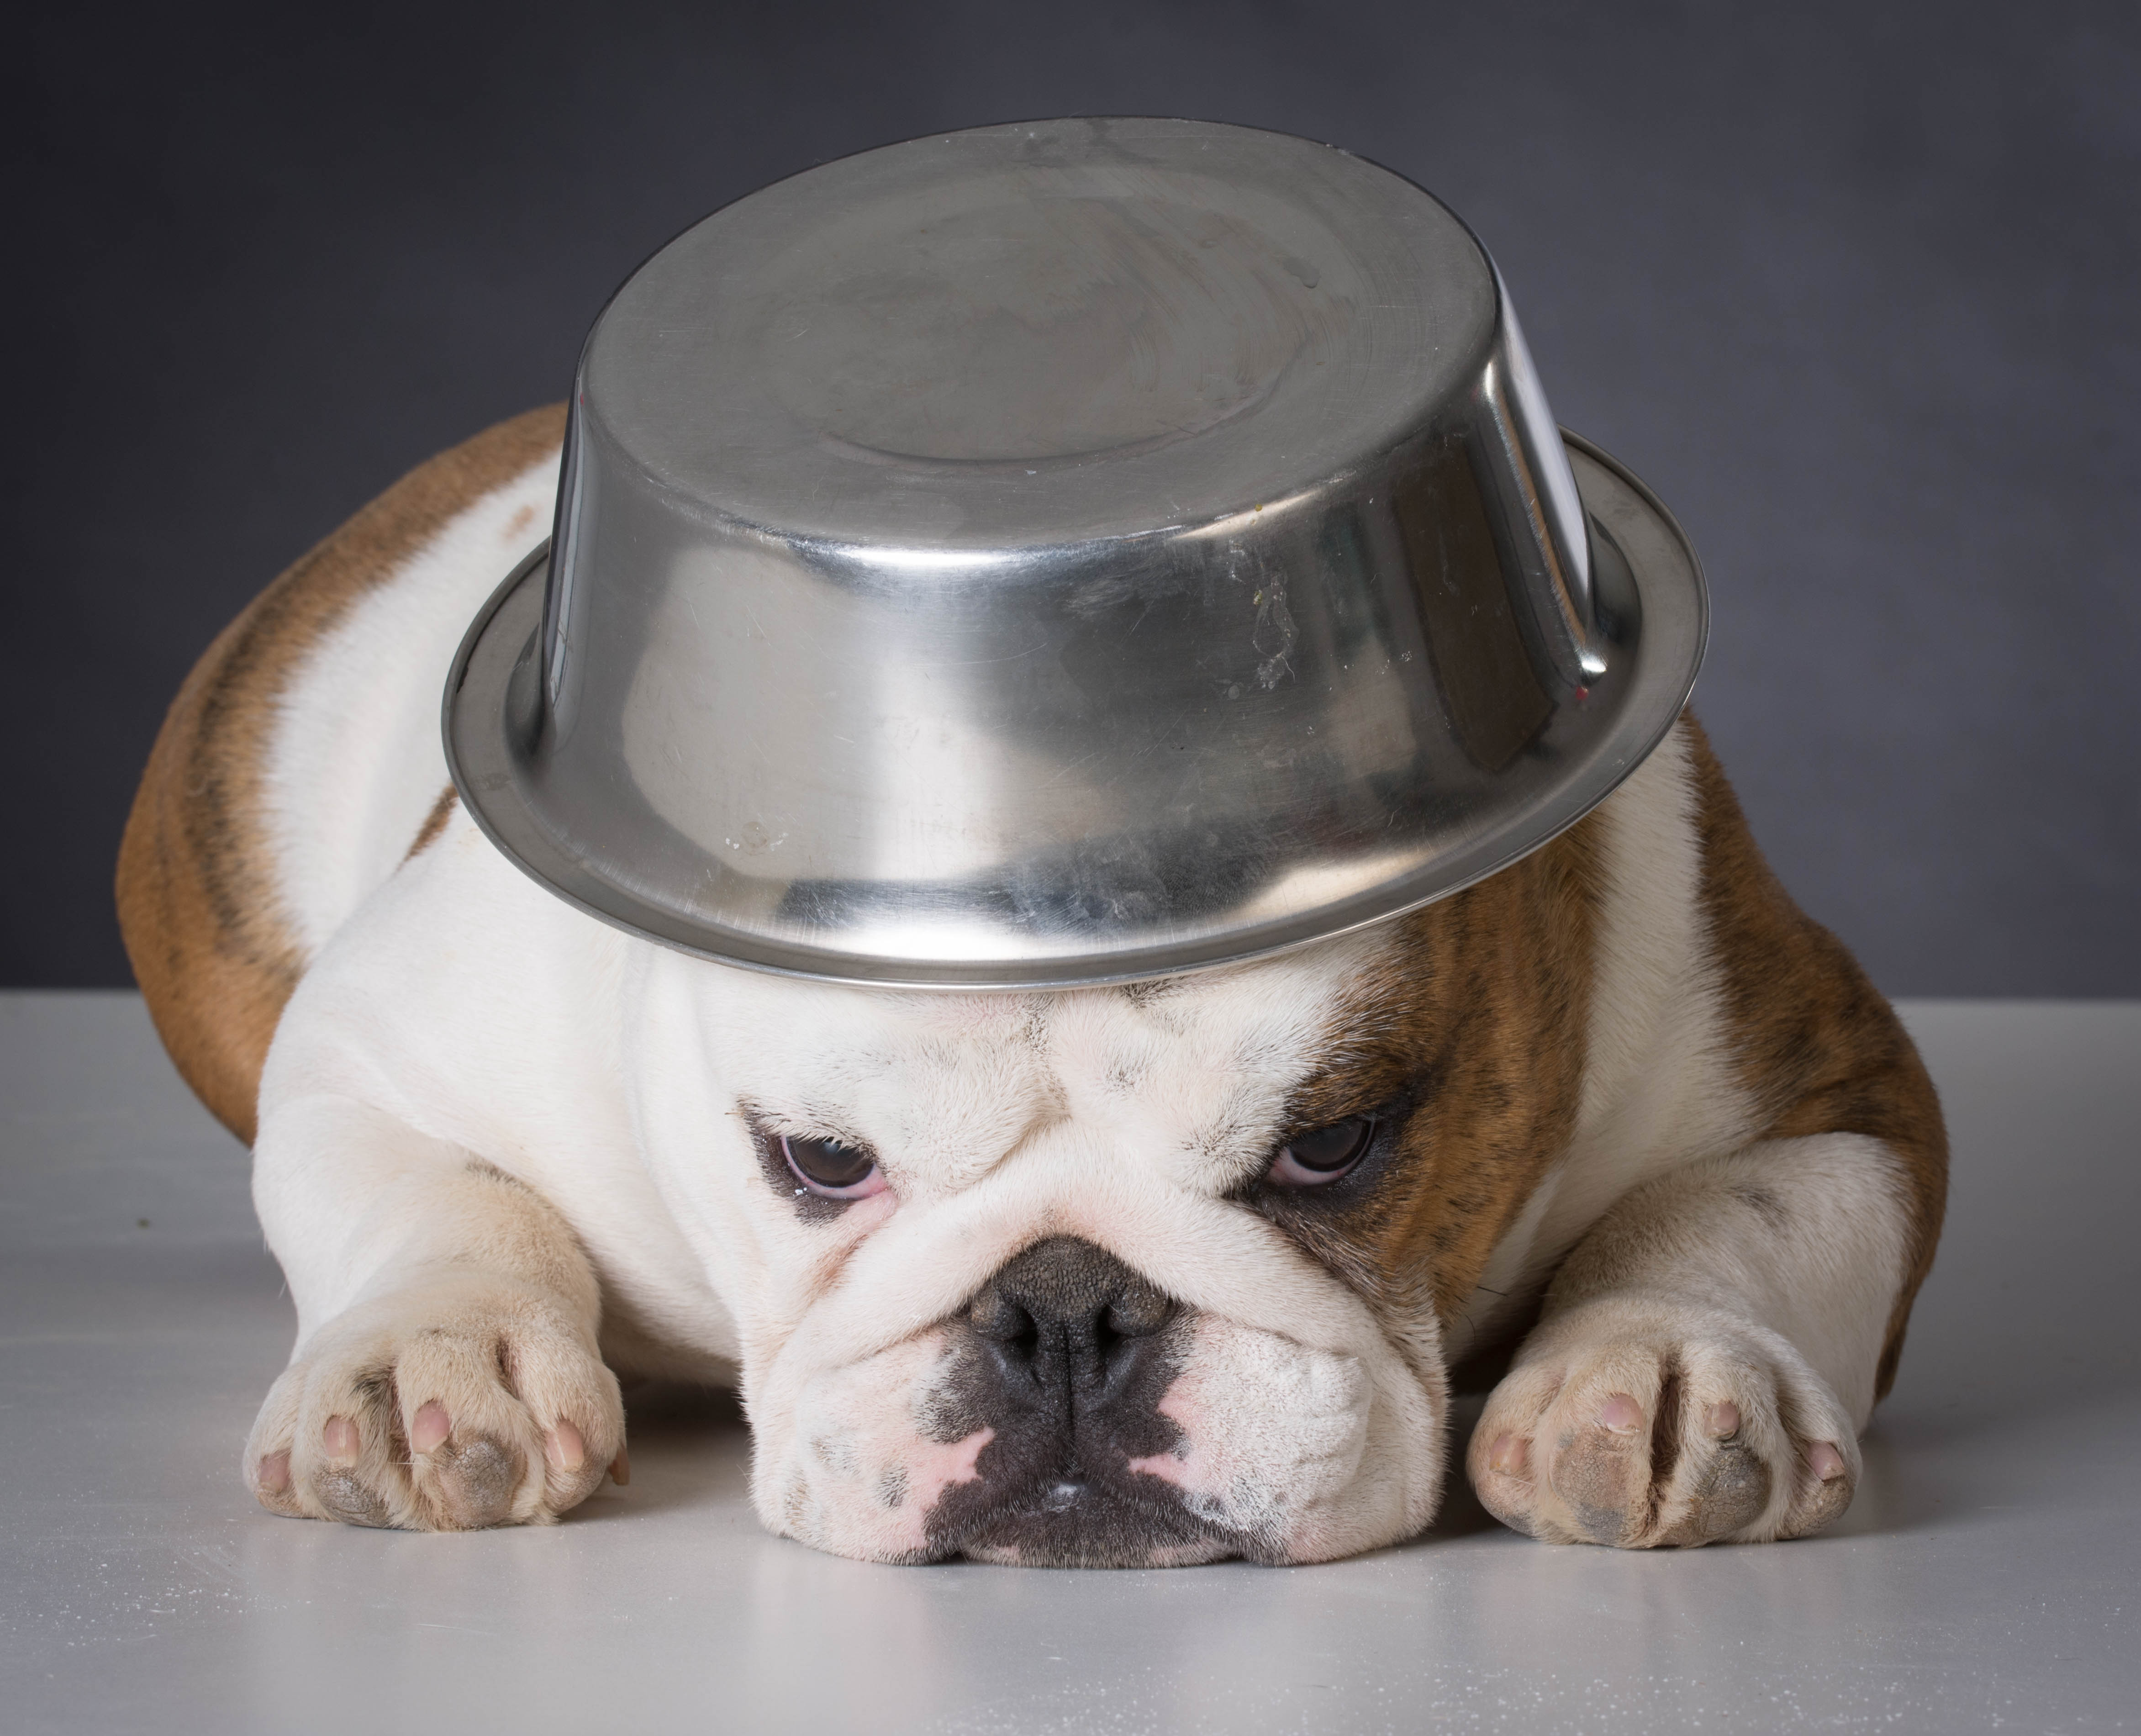 Sad Dog With a Plate on Head